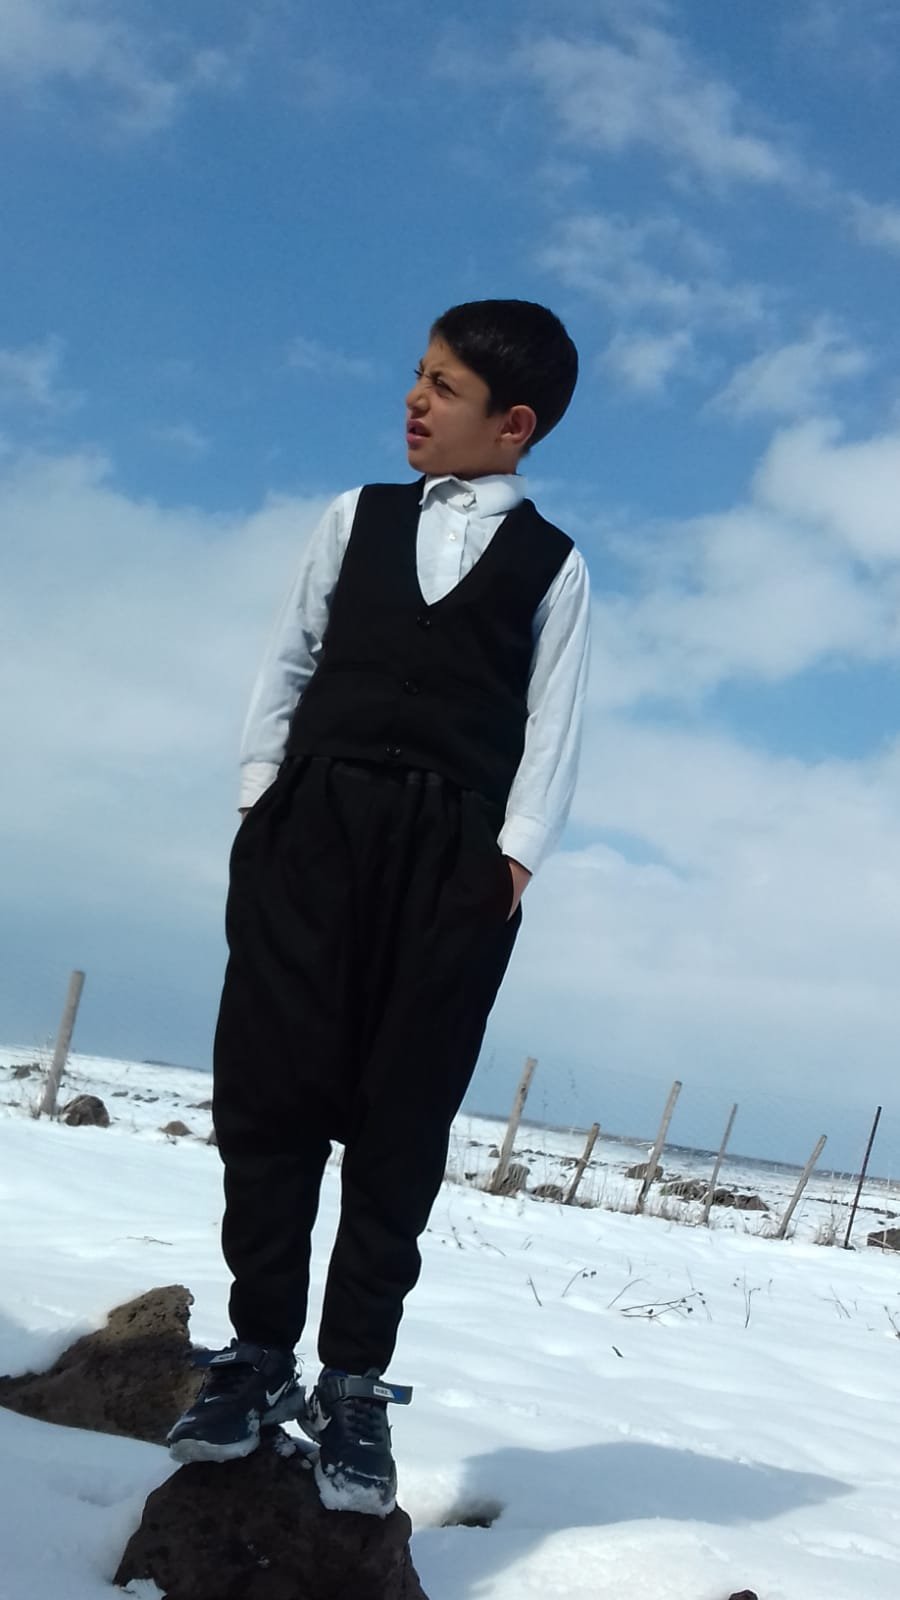 Tabancayla oynarken kendini vuran 11 yaşındaki Mustafa, öldü